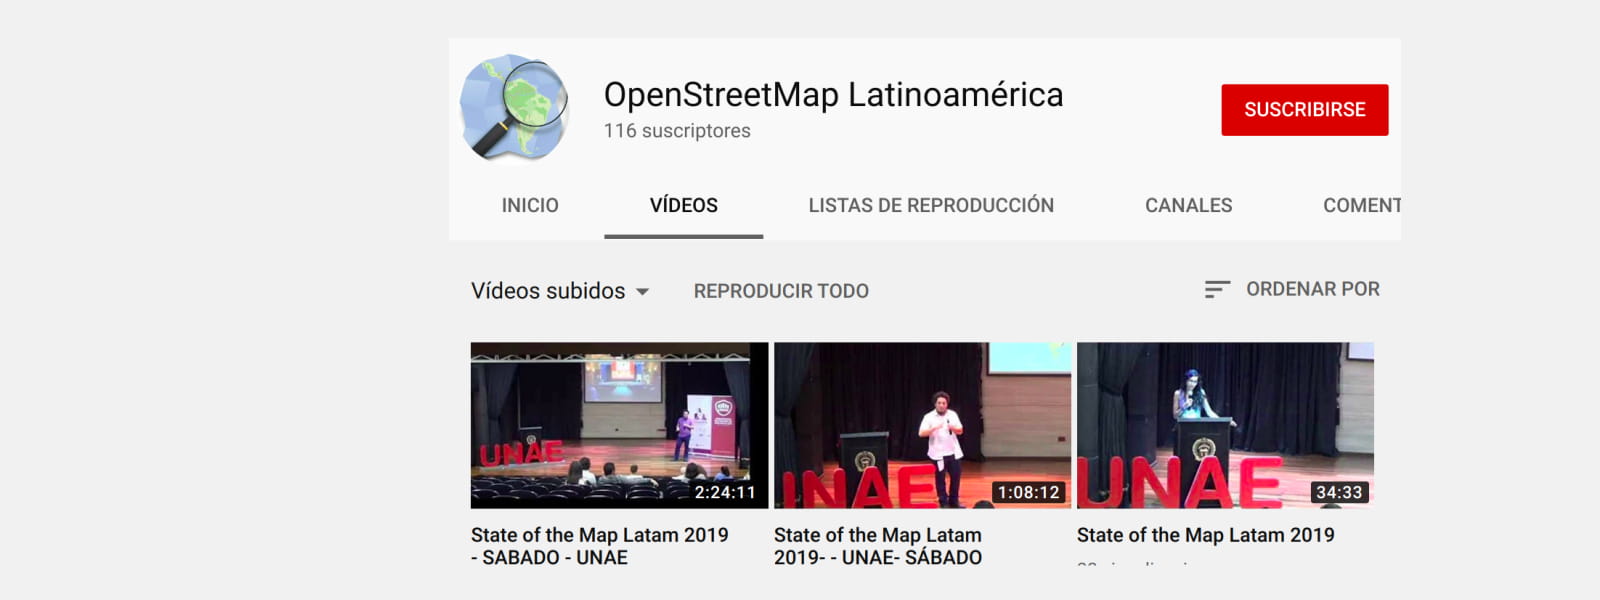 Portada. Canle de Youtube de OpenStreetMap LatinoAmérica